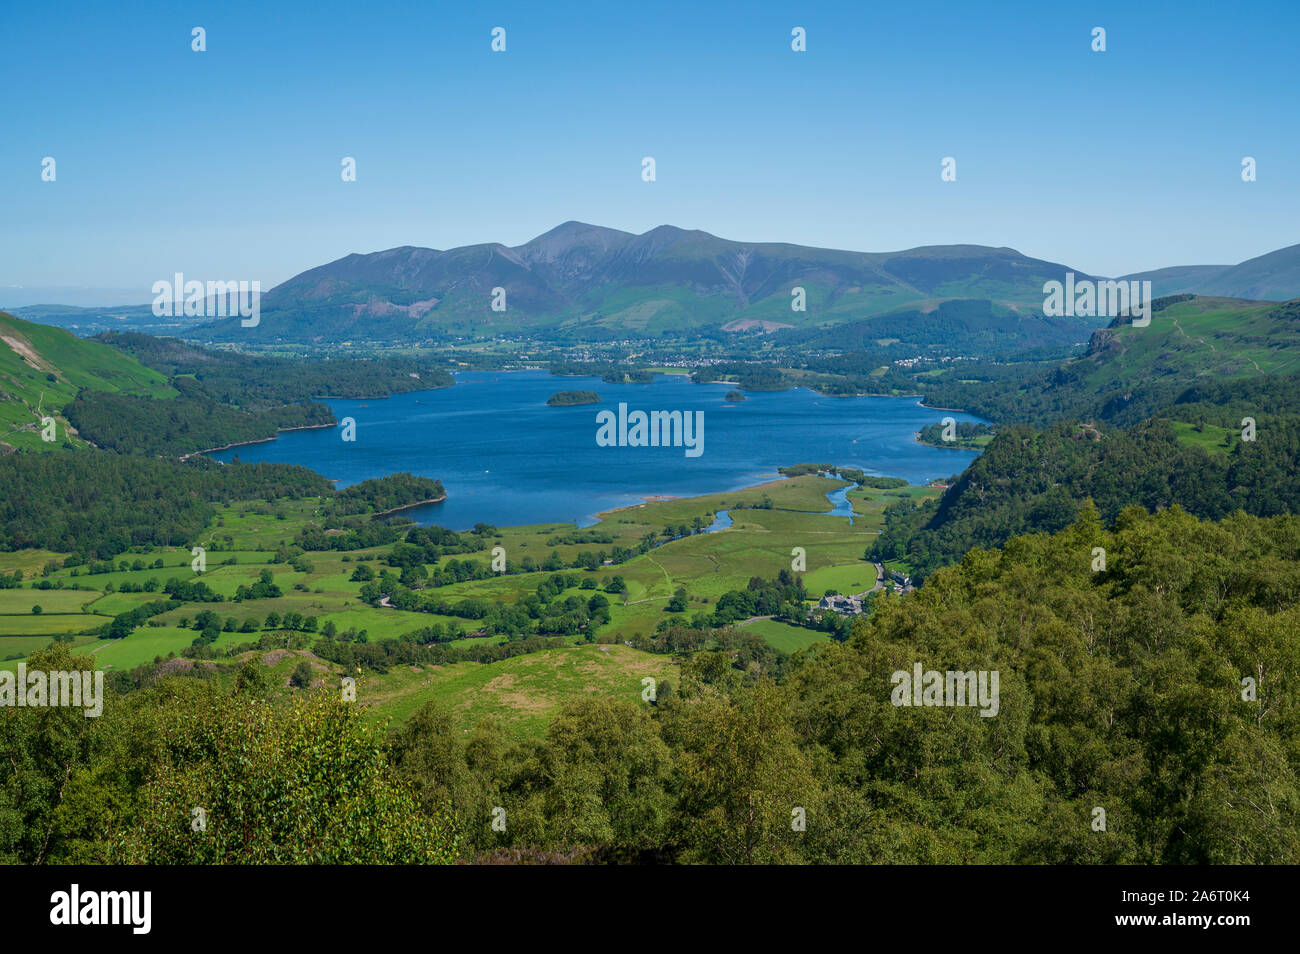 Vue sur Derwent Water du King's comment viewpoint, Lake District, Cumbria, England, UK Banque D'Images